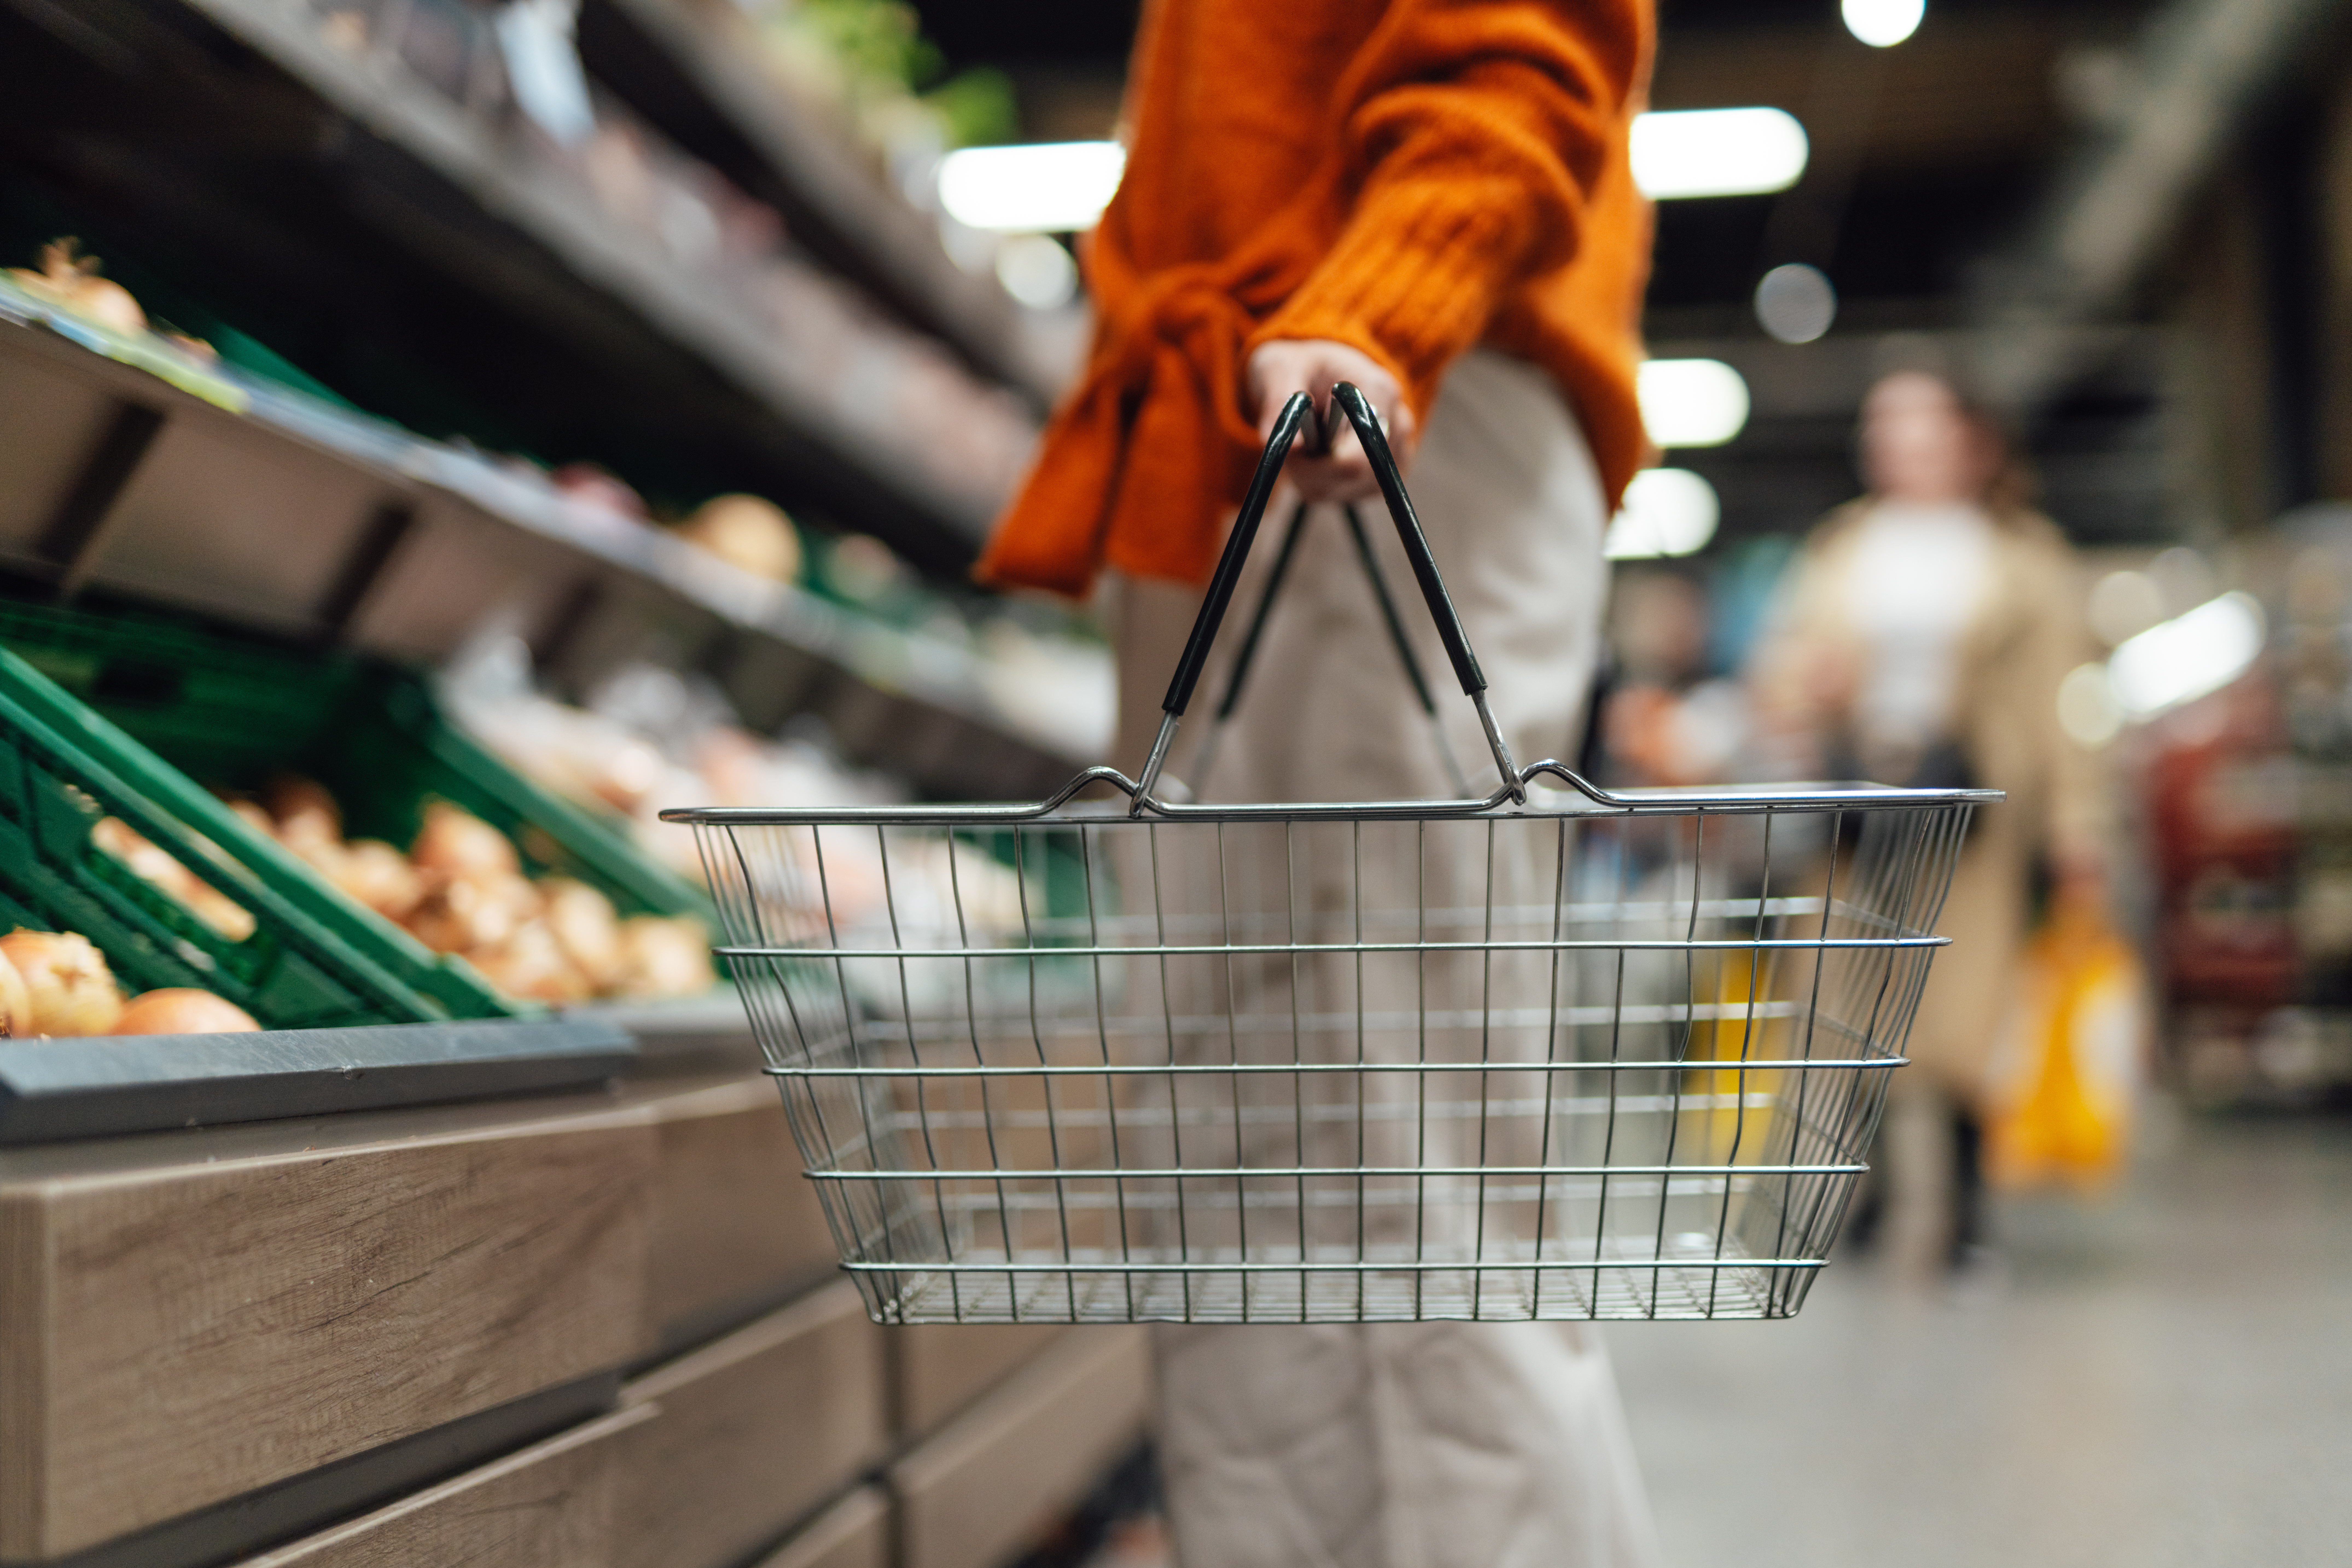 Des bons d'alimentation sont destinés à aider les résidents vulnérables du supermarché